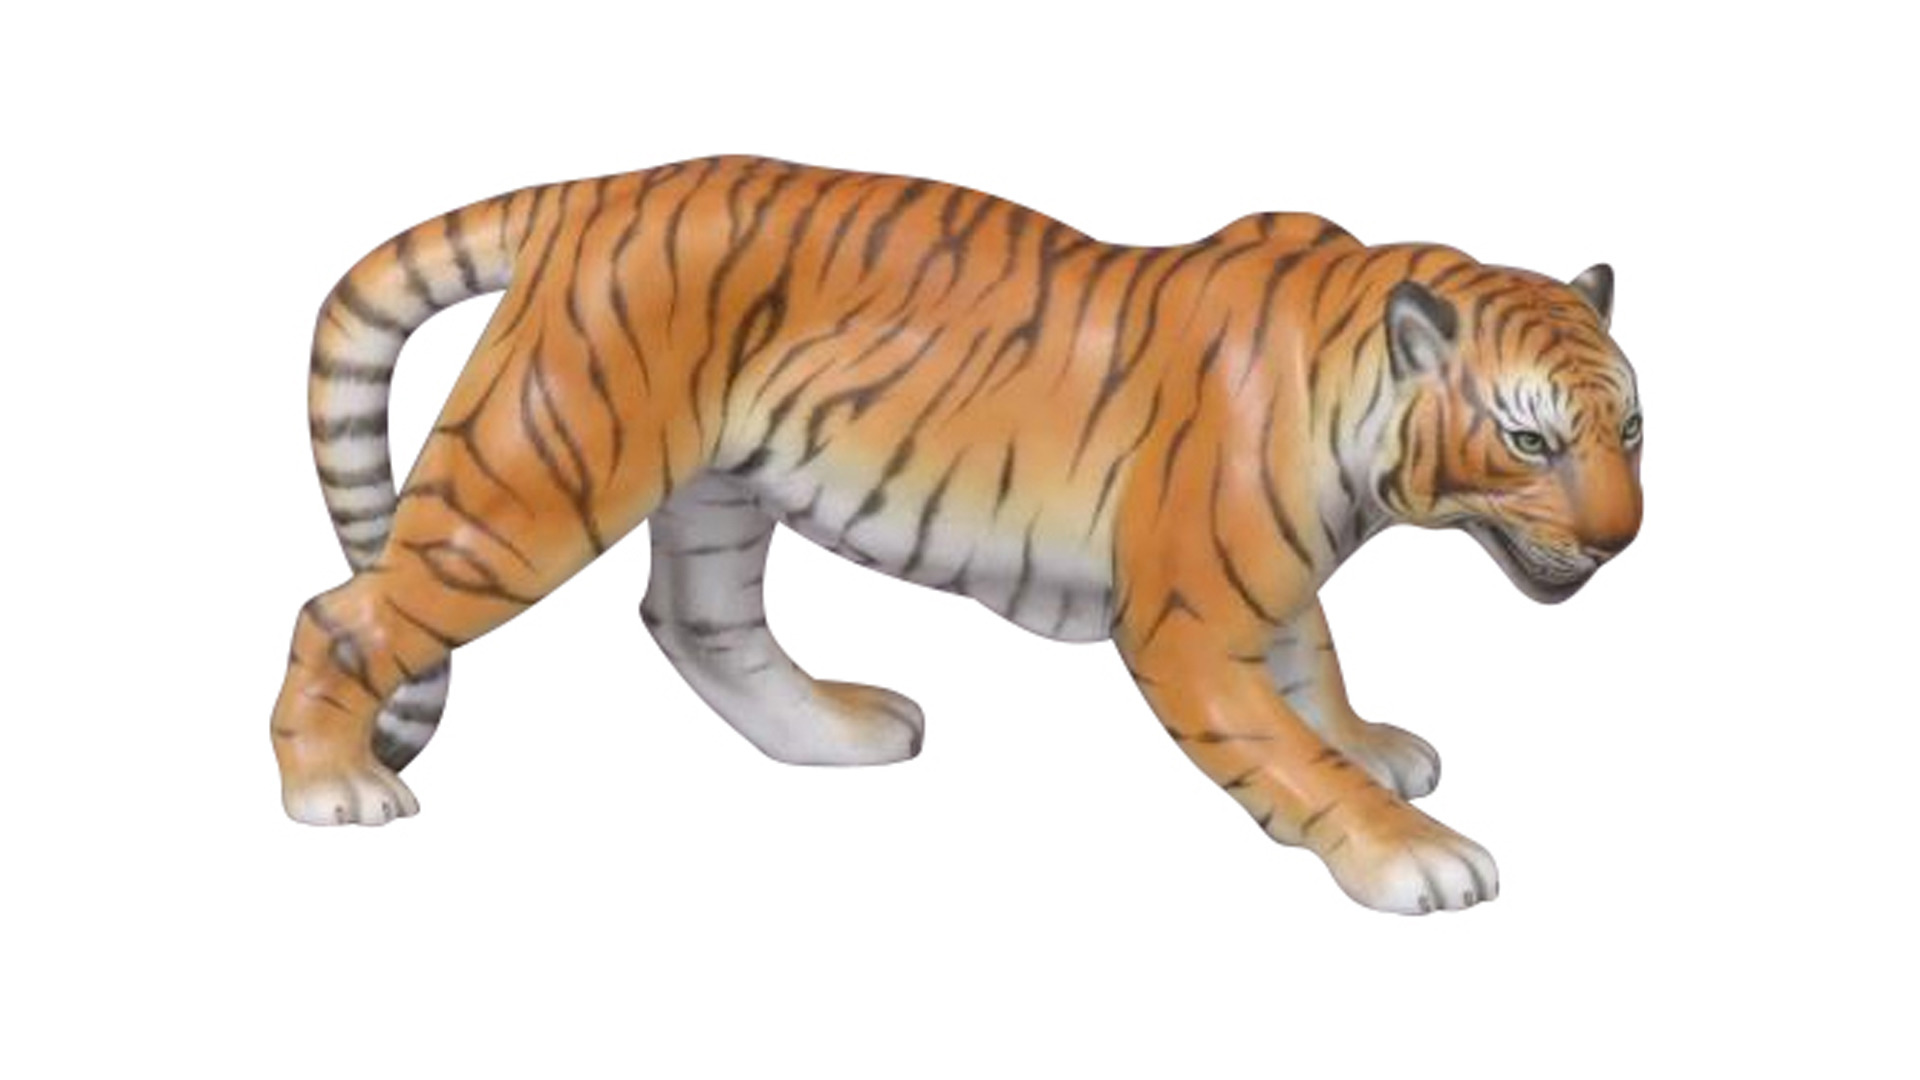 Фигурка Herend Тигр 9,2 см